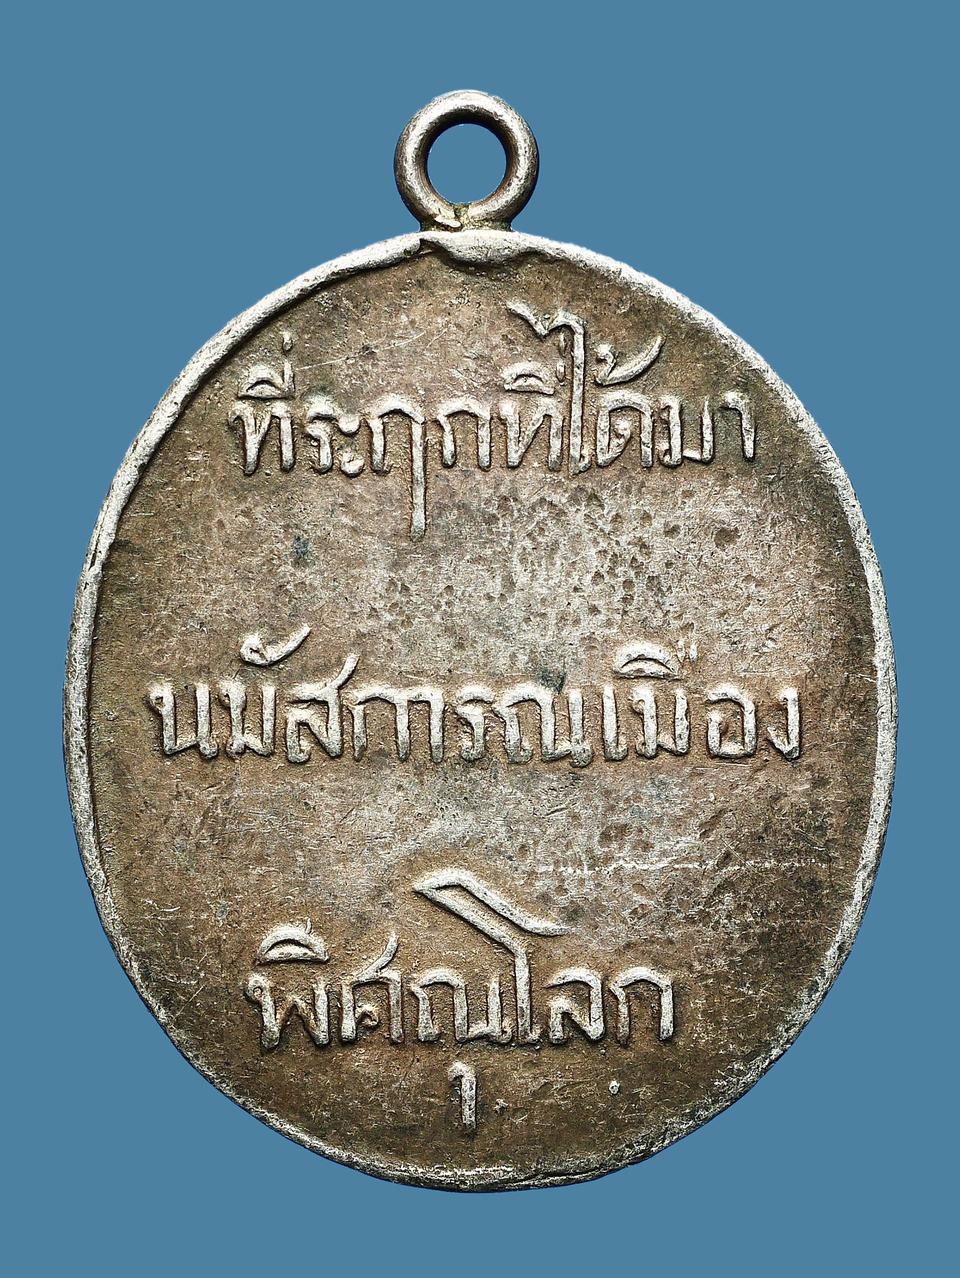 เหรียญพระพุทธชินราช วัดพระศรีรัตนมหาธาตุฯ รุ่นแรก ปี 2460 เนื้อเงิน...เก่าๆ รูปเล็กที่ 2